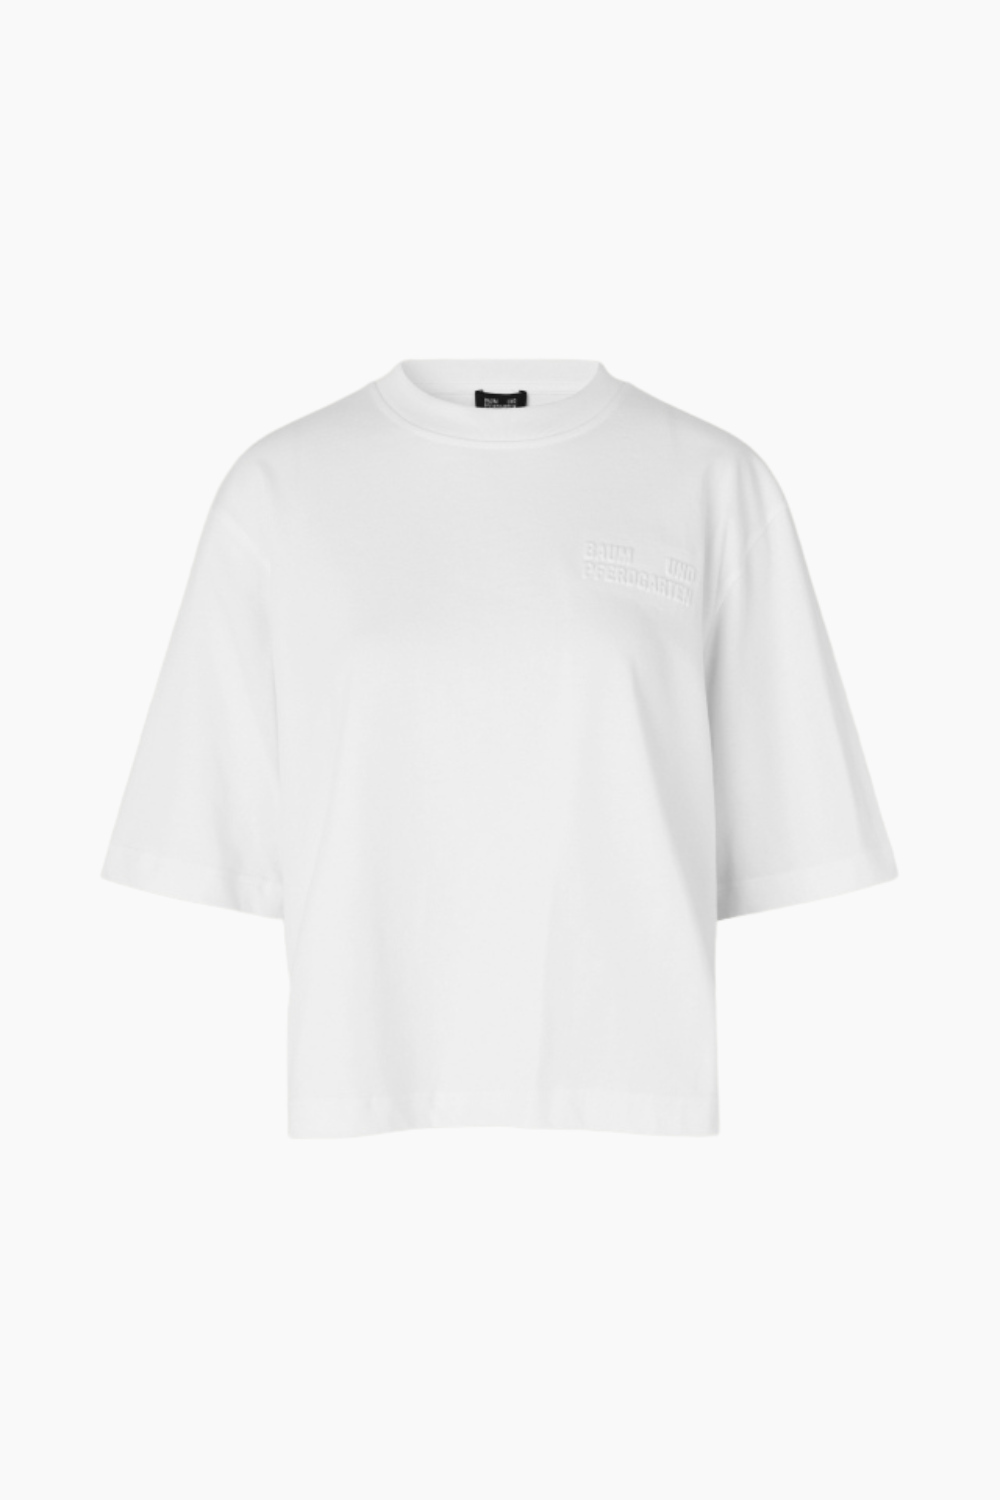 Se Jiana T-shirt - White - Baum und Pferdgarten - Hvid S hos QNTS.dk